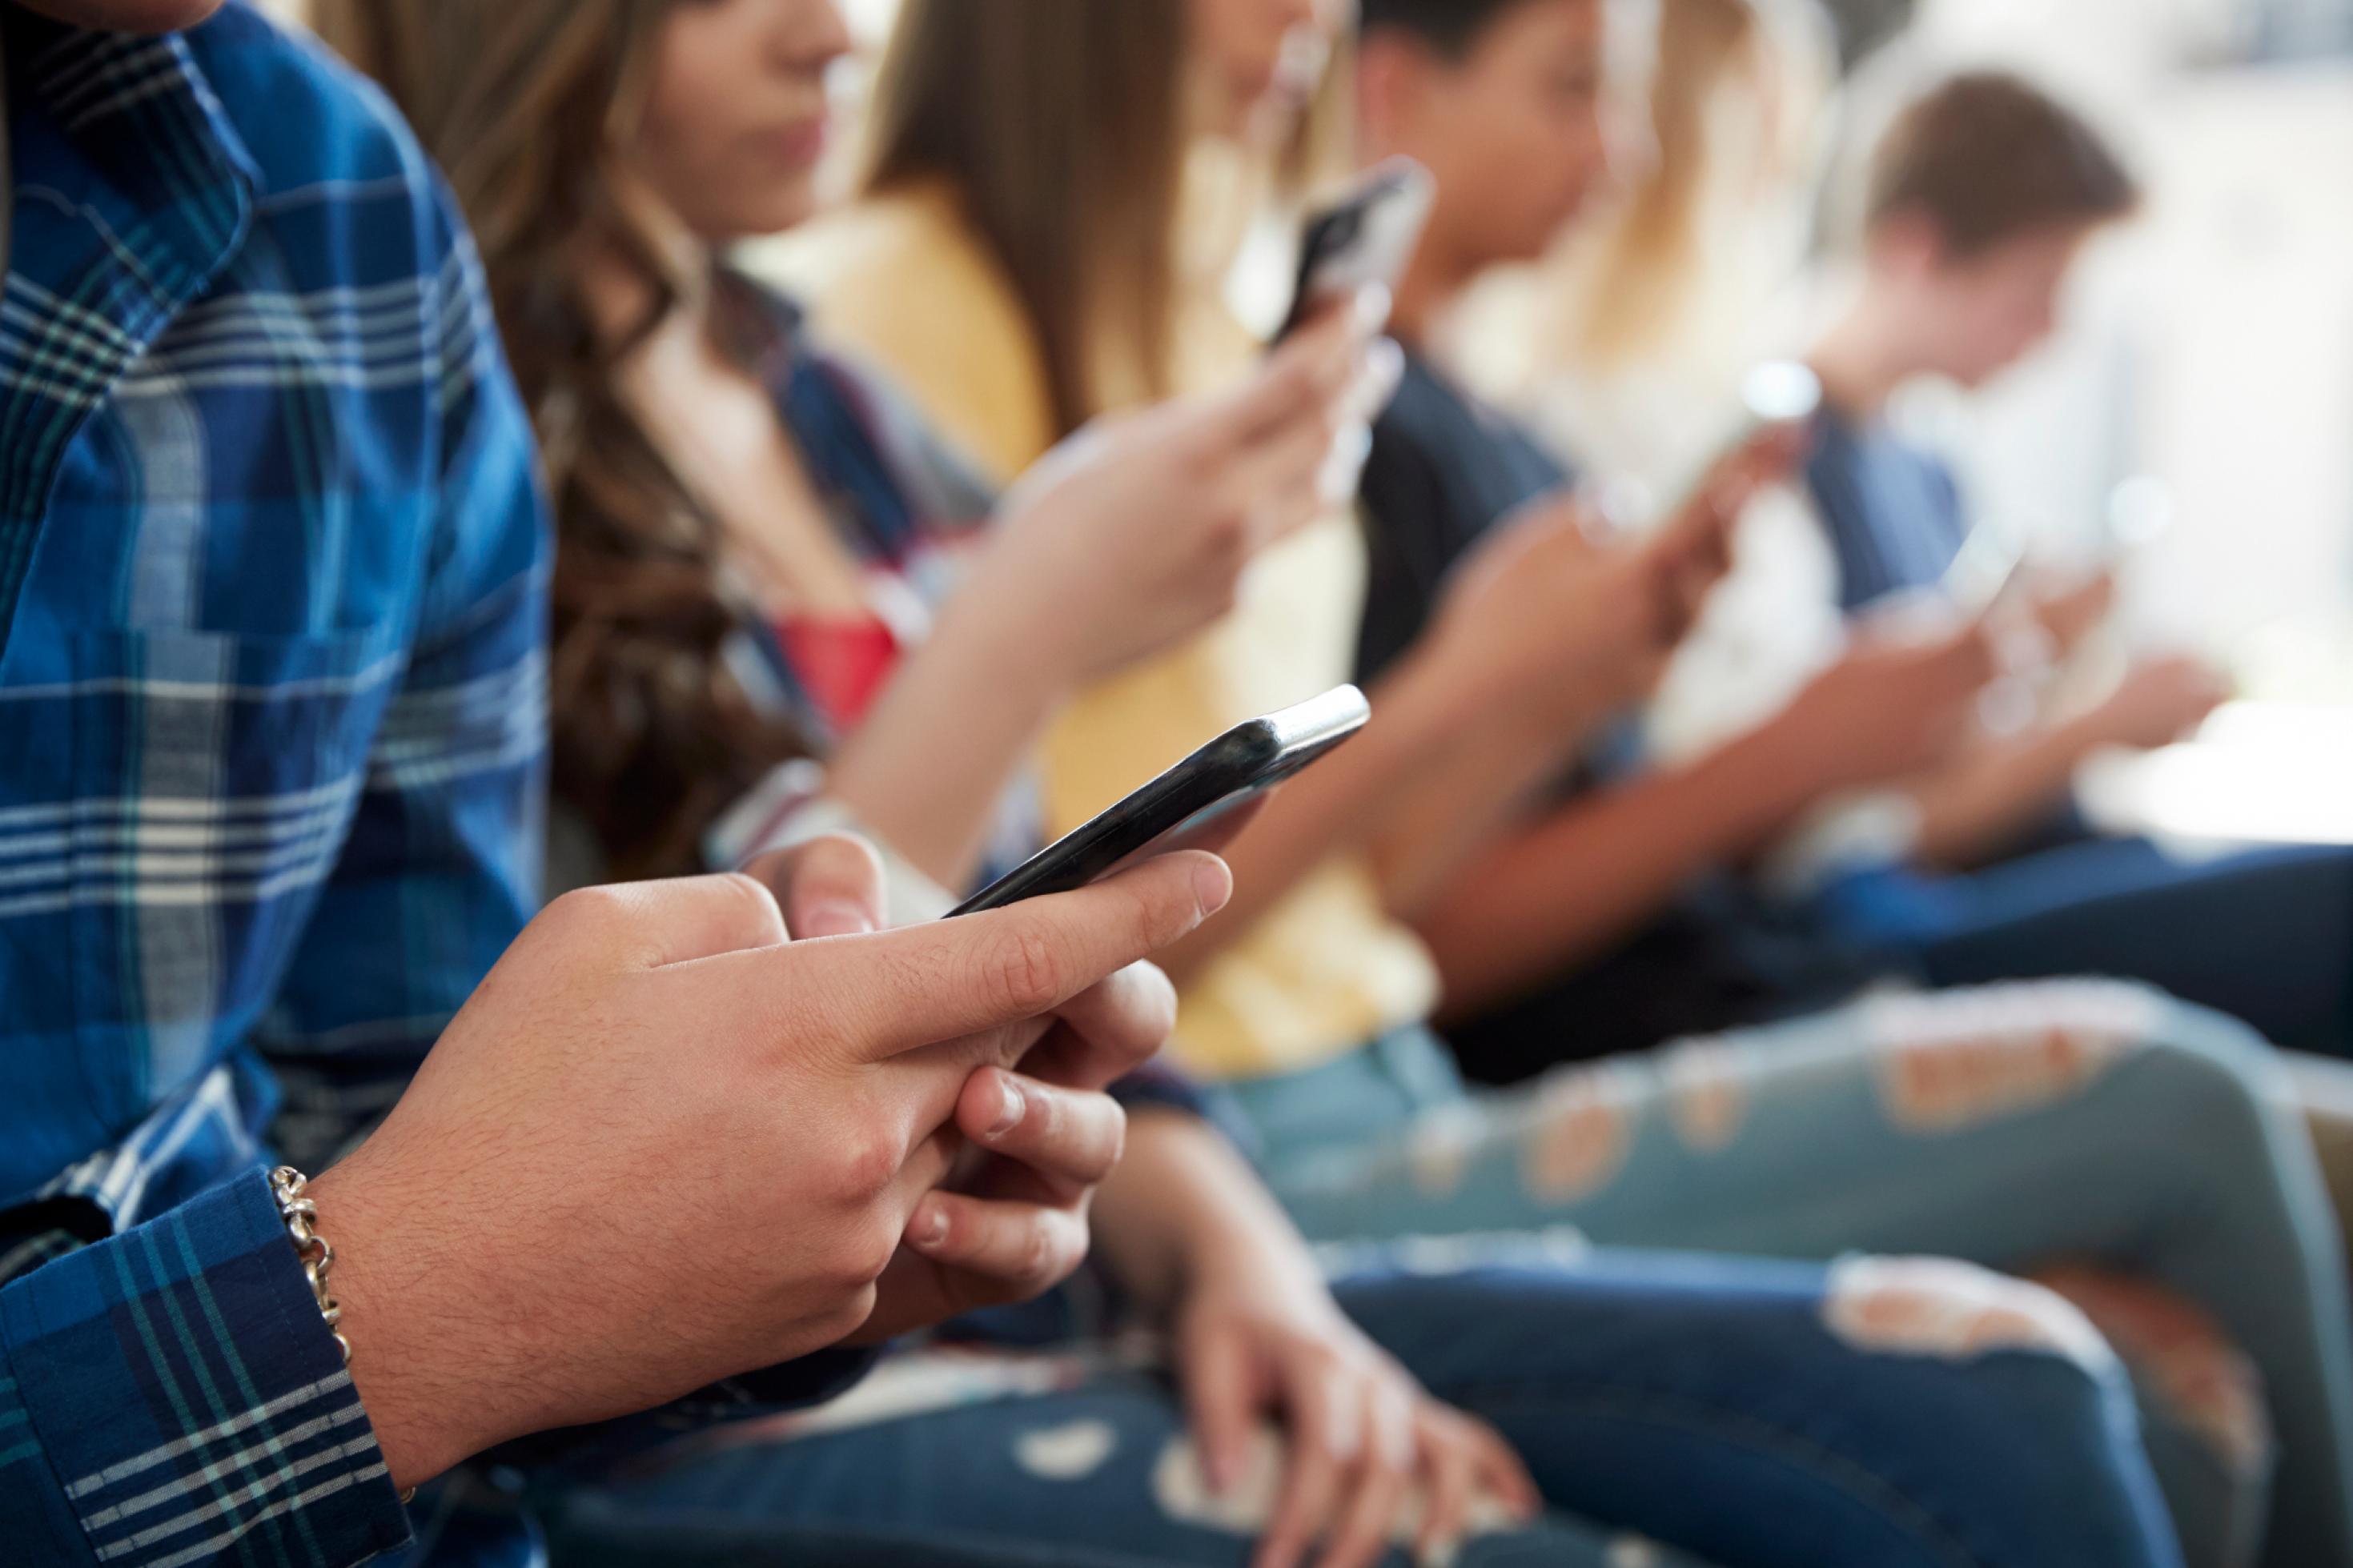 Jugendliche sitzen in einer Reihe und benutzen Smartphones.